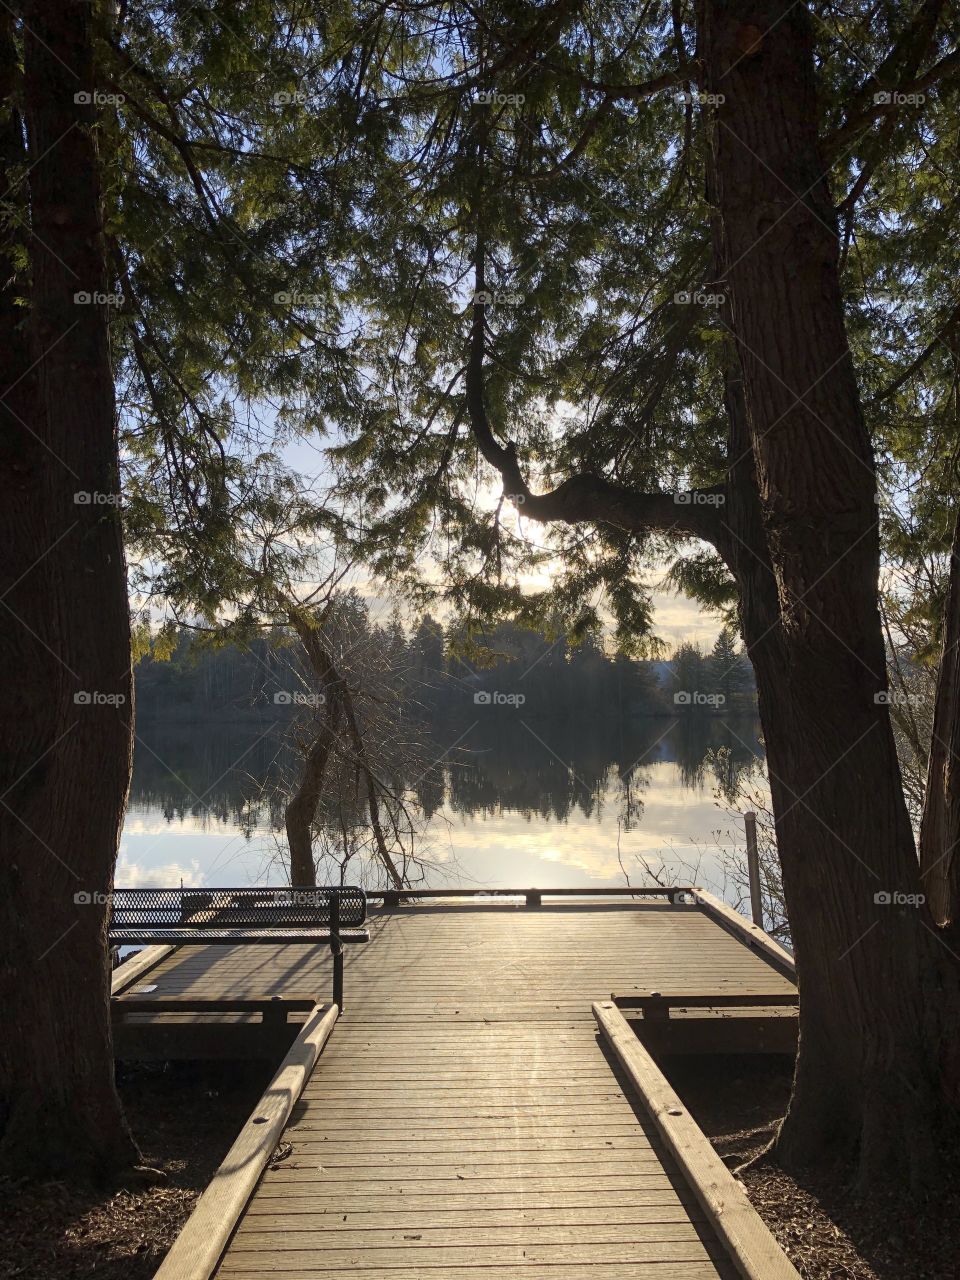 Dock on lake 